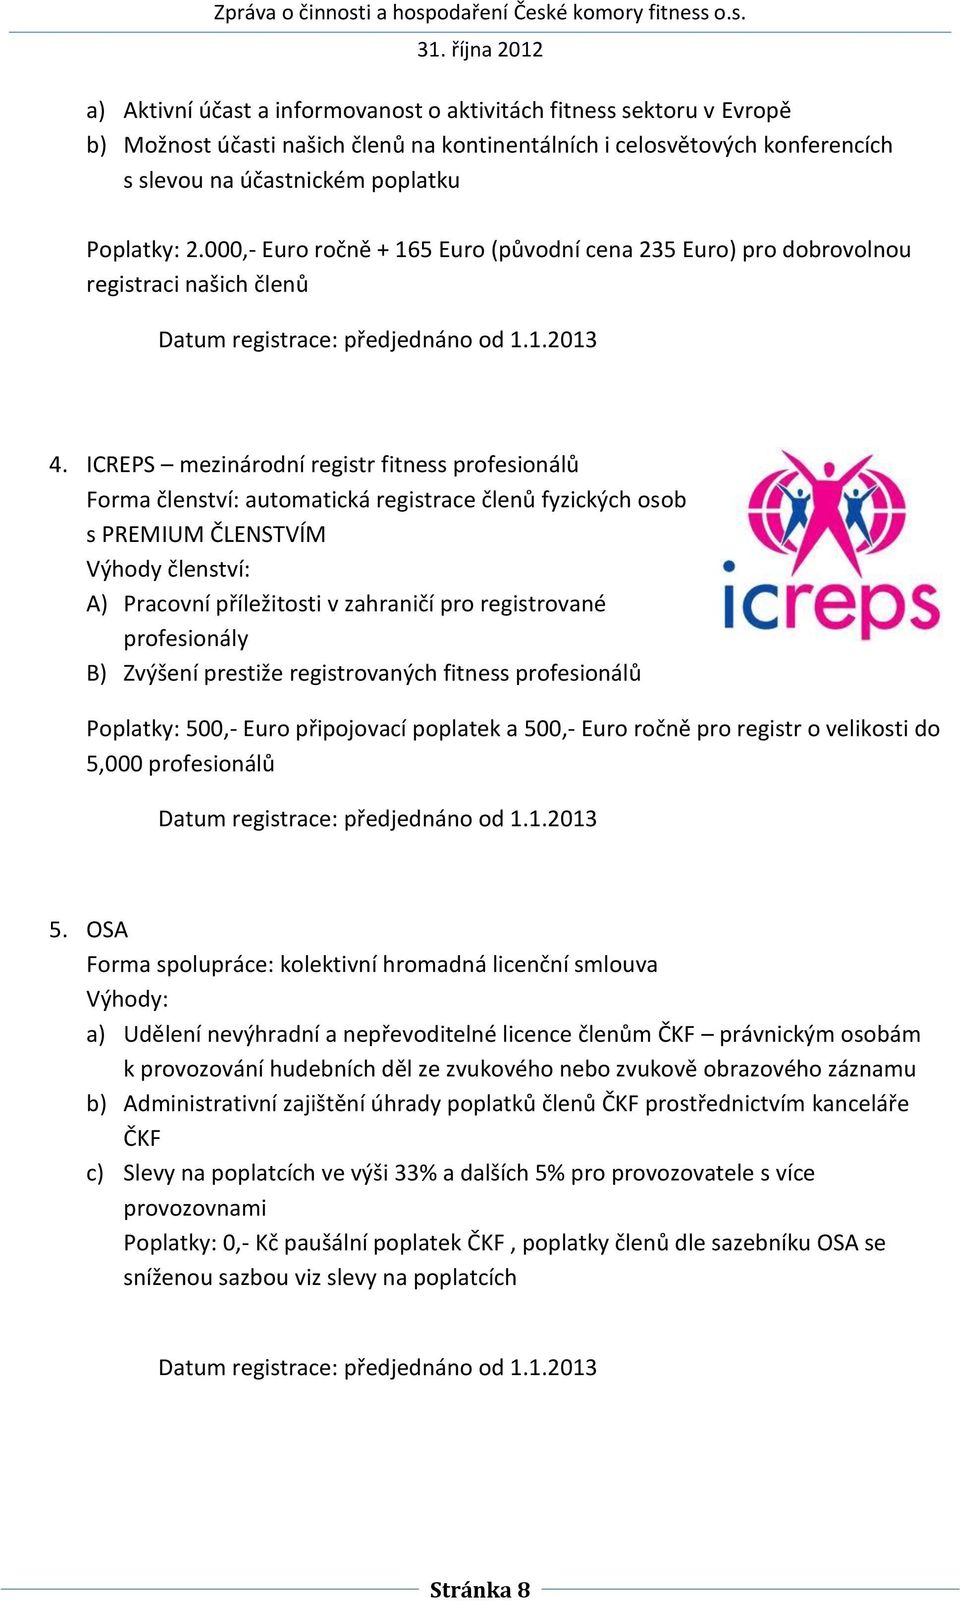 ICREPS mezinárodní registr fitness profesionálů Forma členství: automatická registrace členů fyzických osob s PREMIUM ČLENSTVÍM Výhody členství: A) Pracovní příležitosti v zahraničí pro registrované